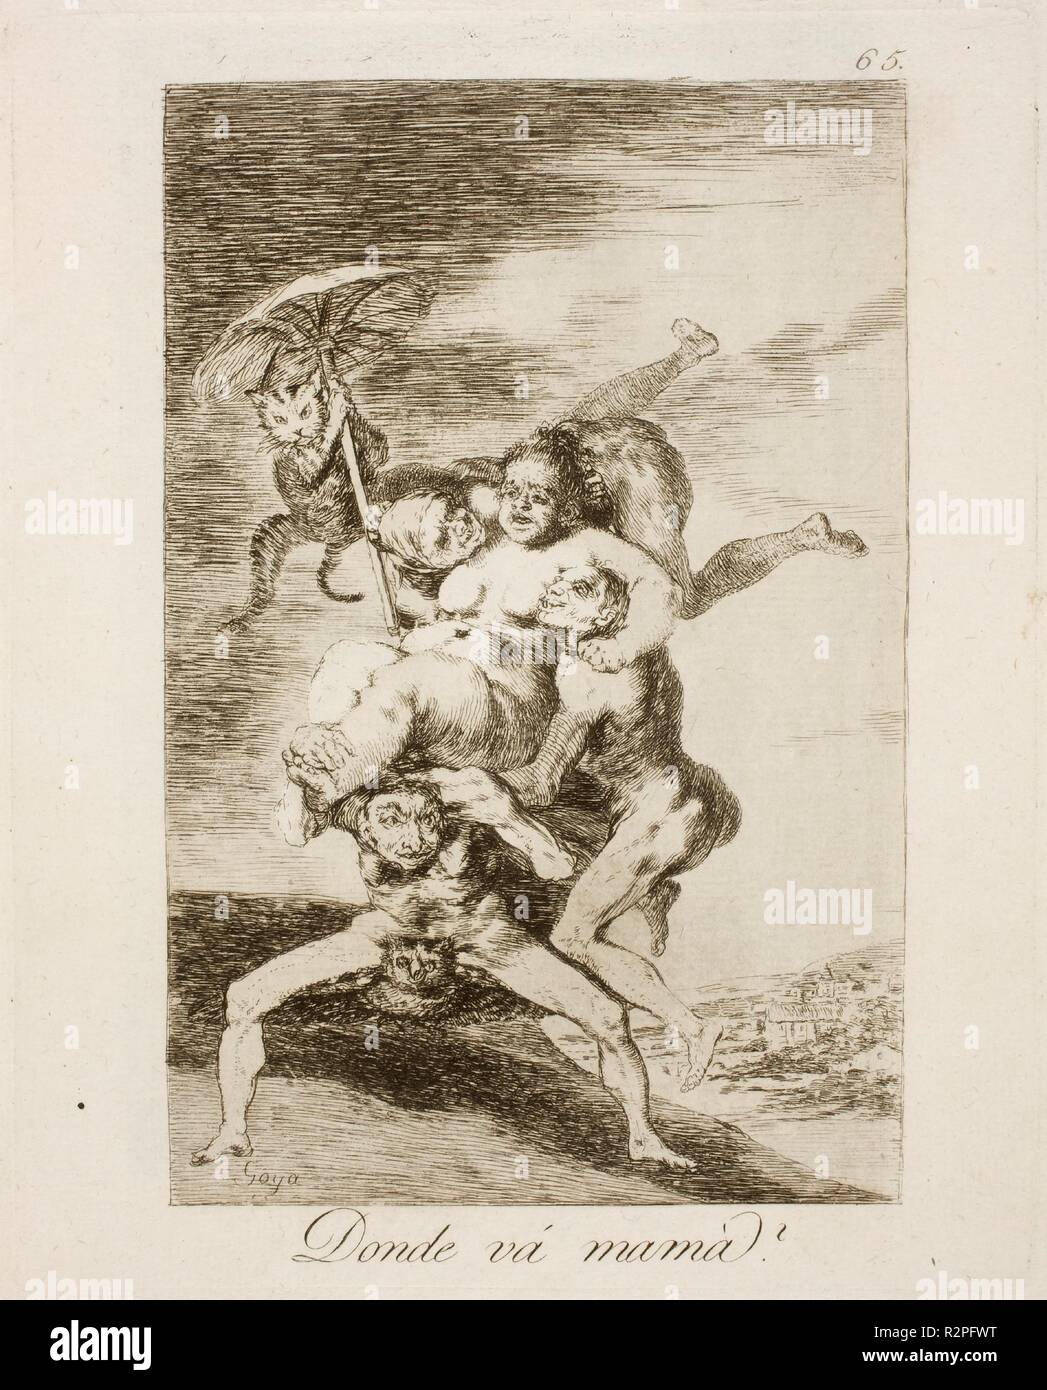 Francisco de Goya y Lucientes/Wo ist Mami?". 1797 - 1799. Radierung, Aquatinta und Kaltnadel auf Elfenbein Bütten. Museum: Museo del Prado, Madrid, España. Stockfoto